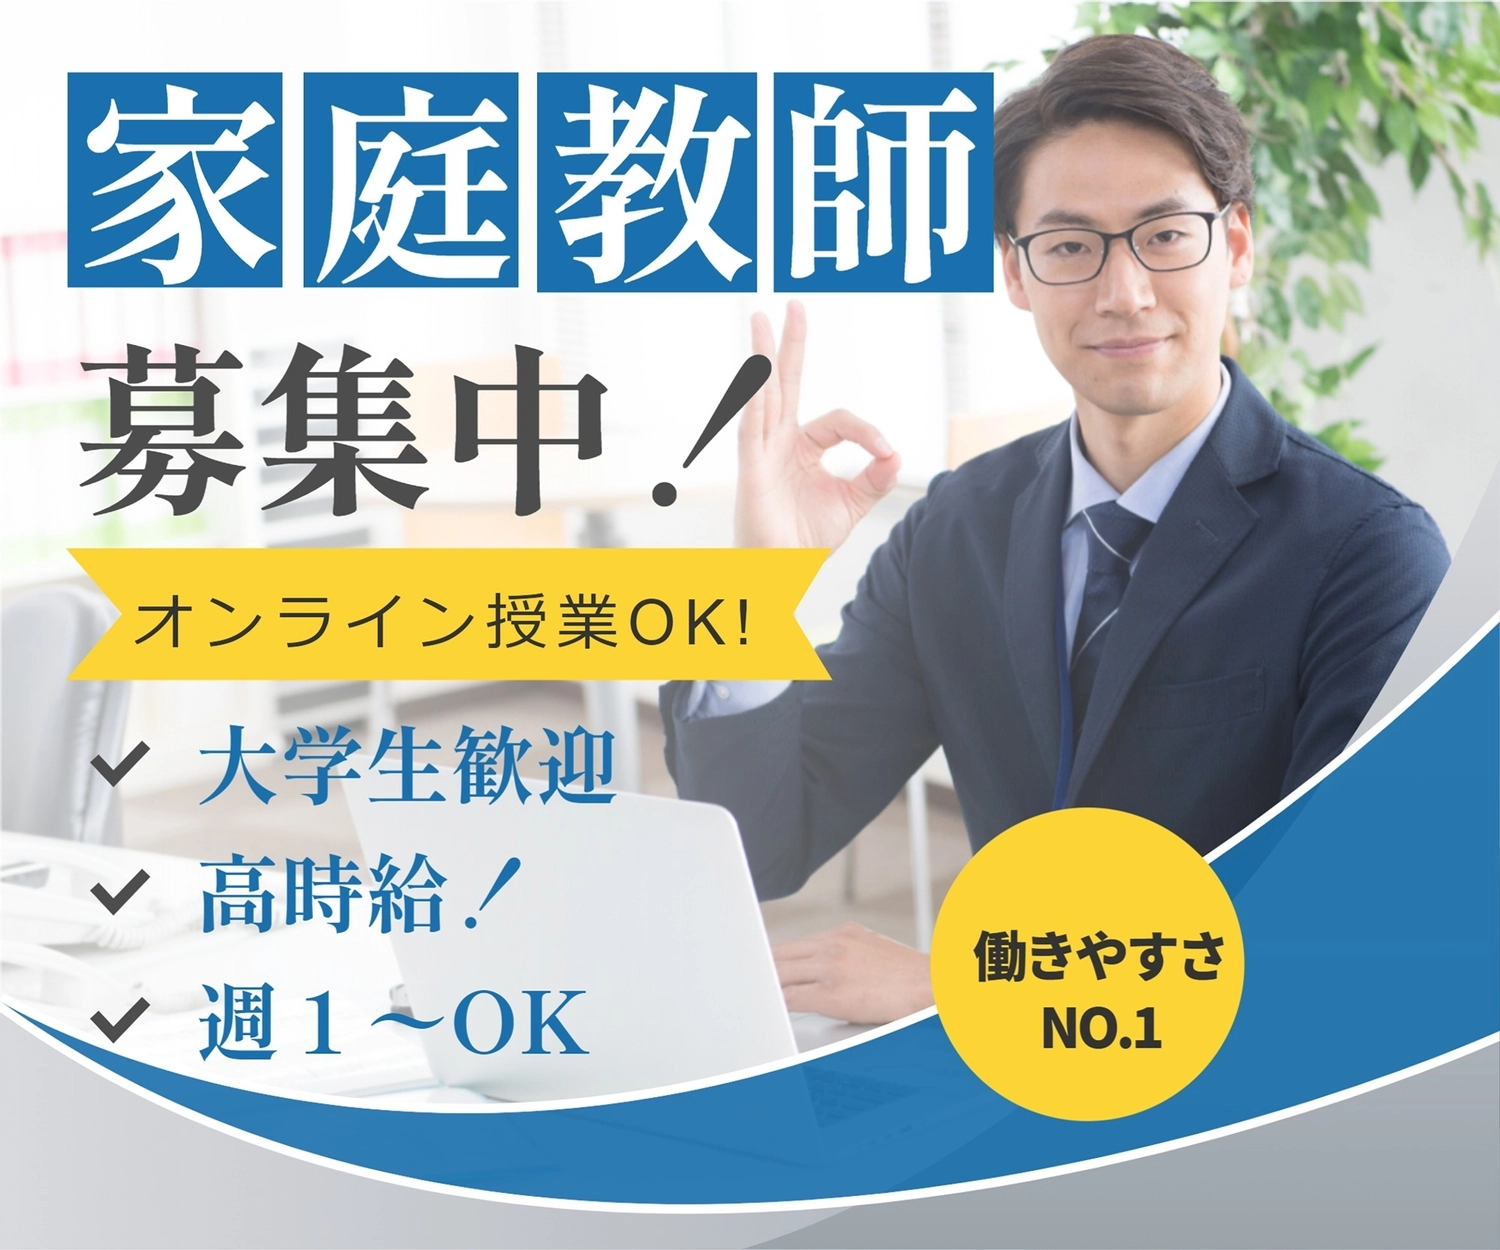 大学生歓迎　家庭教師募集のバナー, Japanese, news, create, Banner template